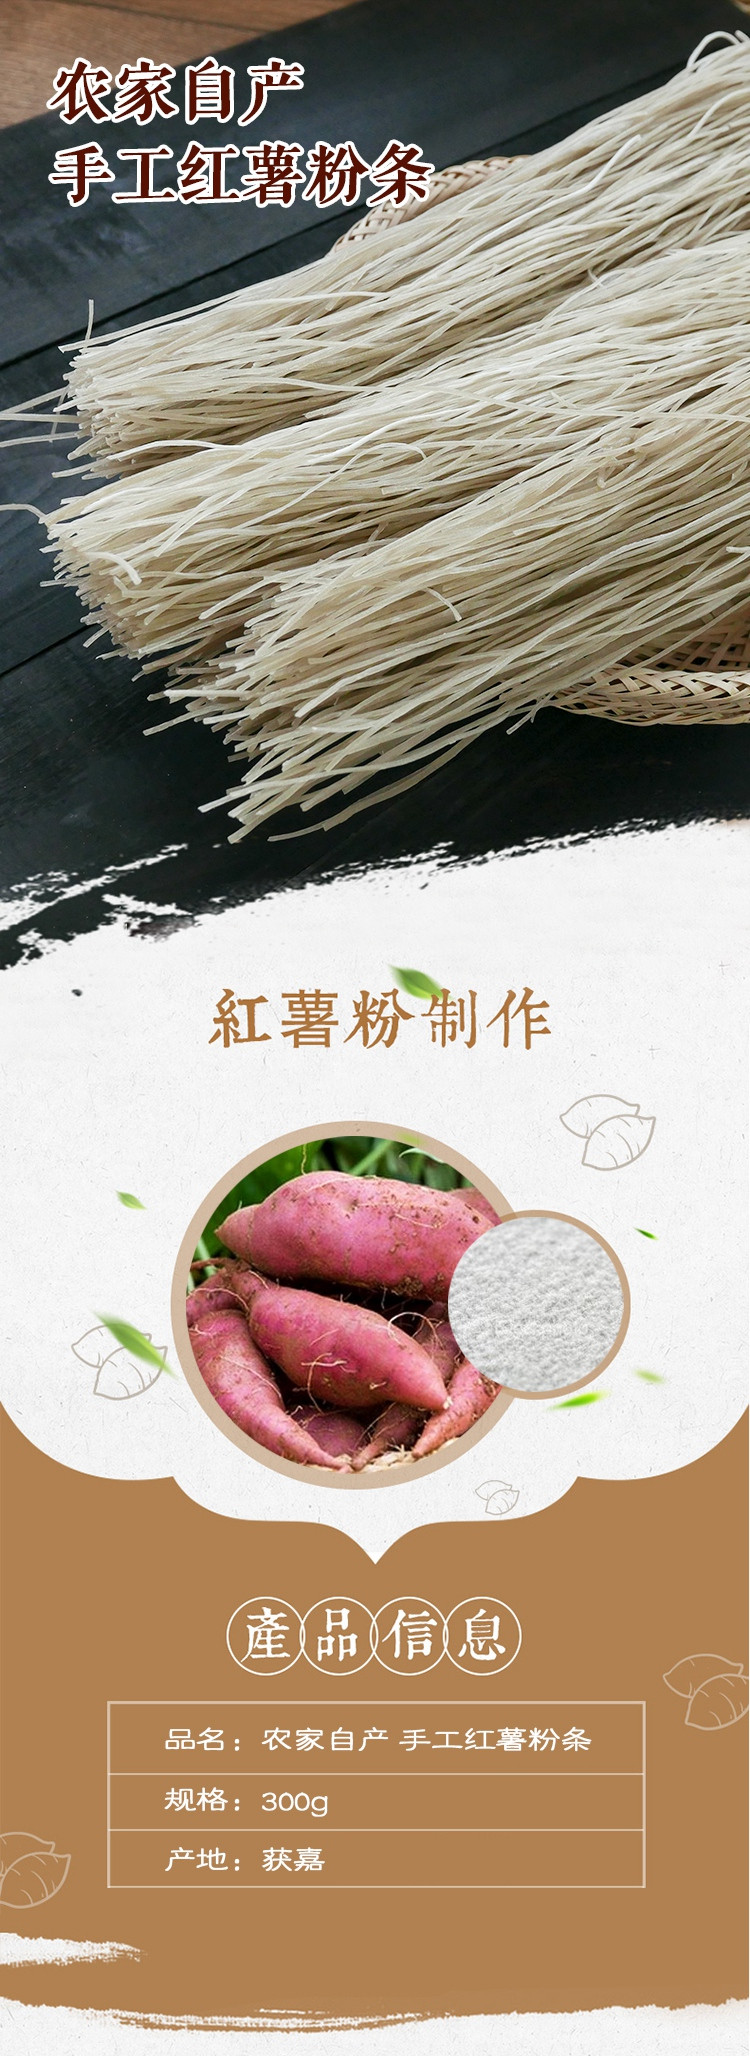 农家自产 手工红薯粉条300g 粉条地瓜红地瓜火锅凉拌煲汤炒菜